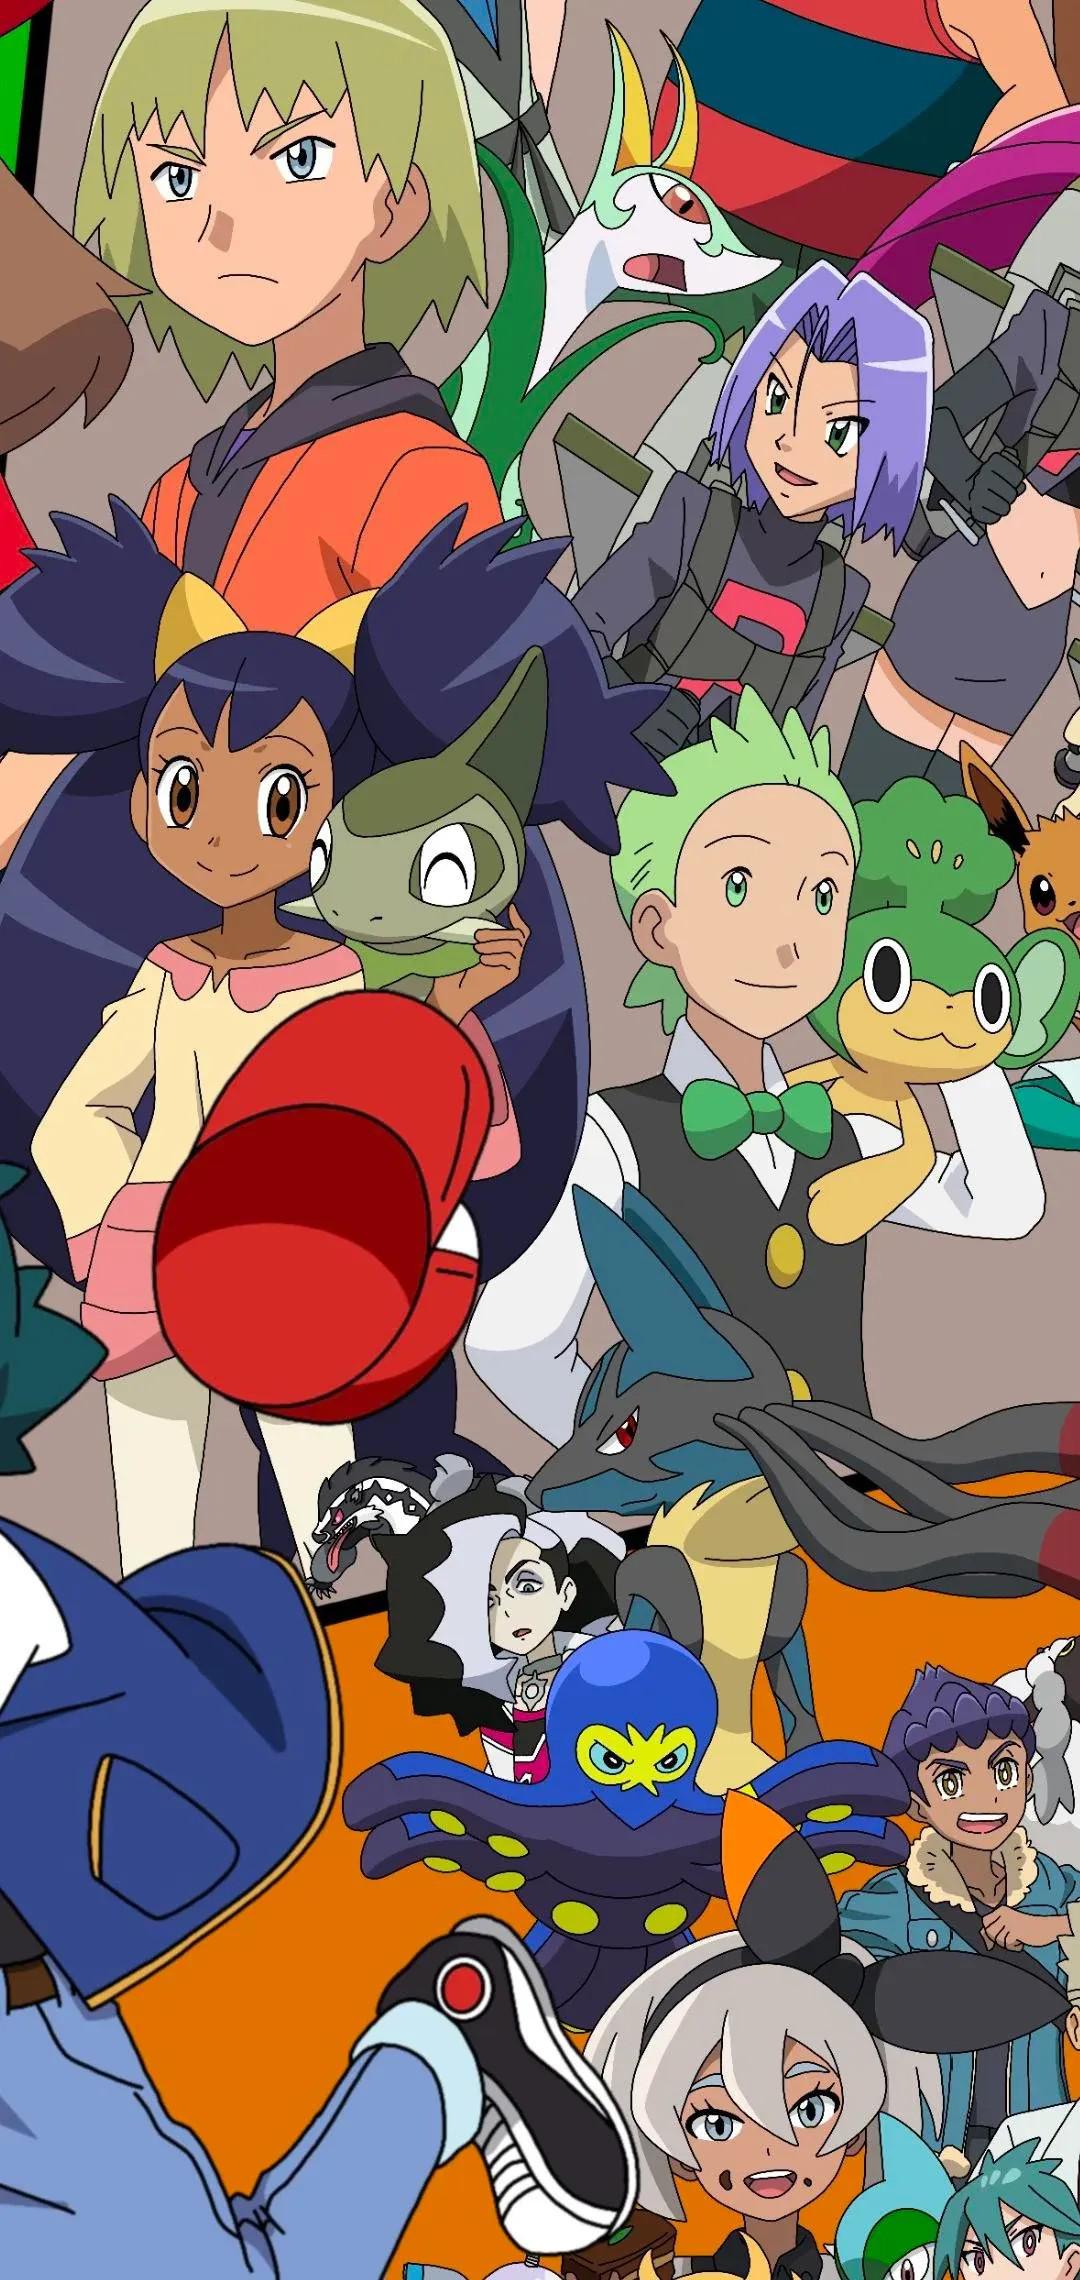 Arte de fã de Pokemon apresenta todos os personagens principais da franquia